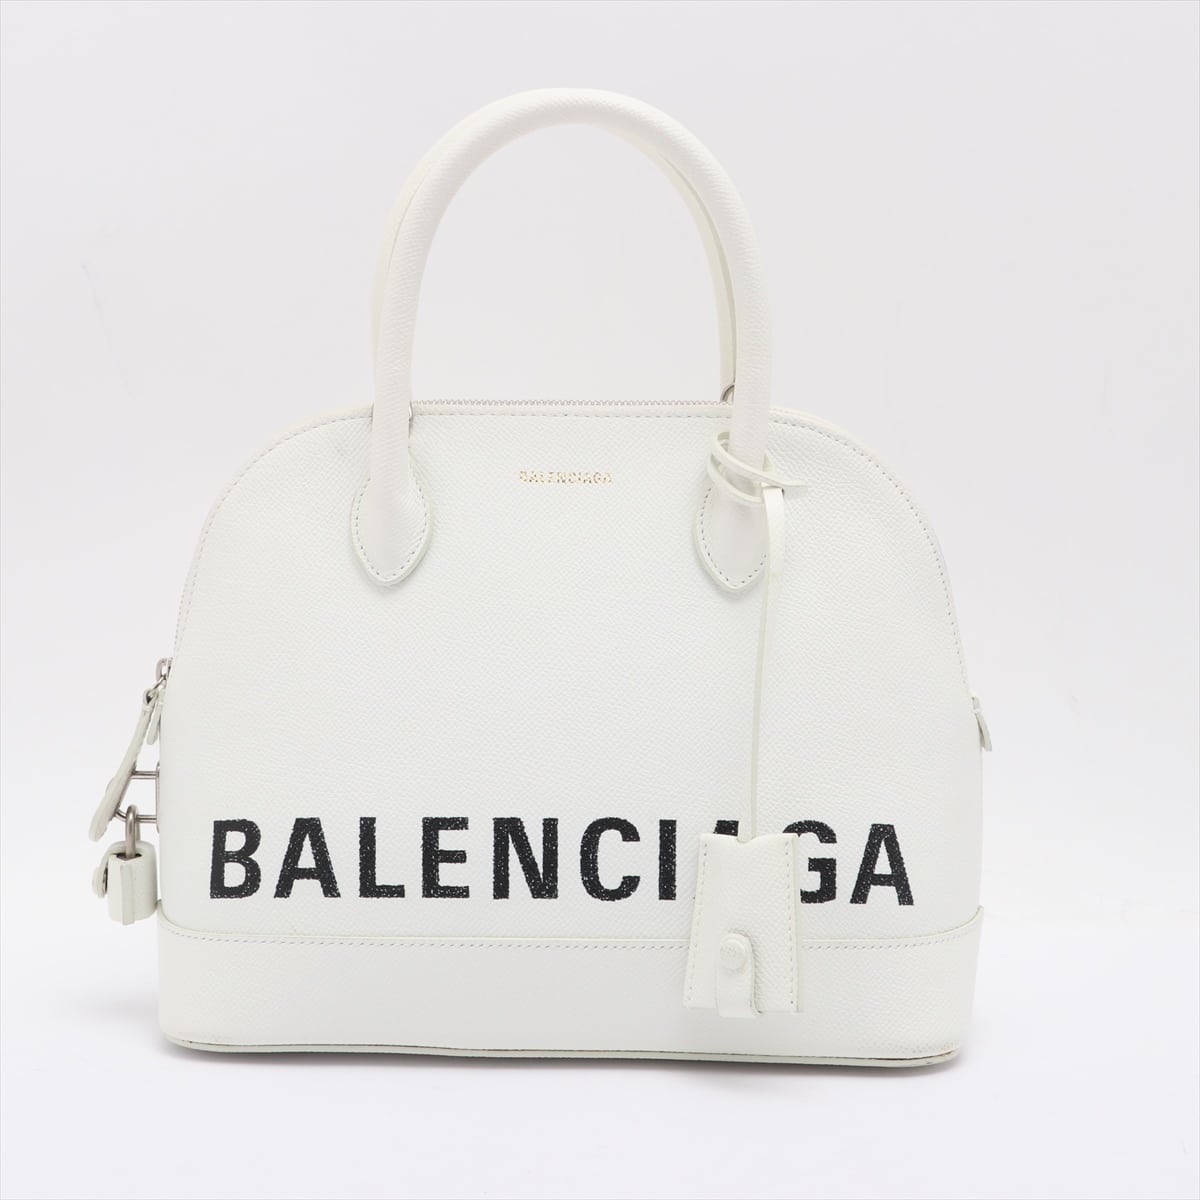 Balenciaga Ville Top Handle S Leather 2way handbag White 518873